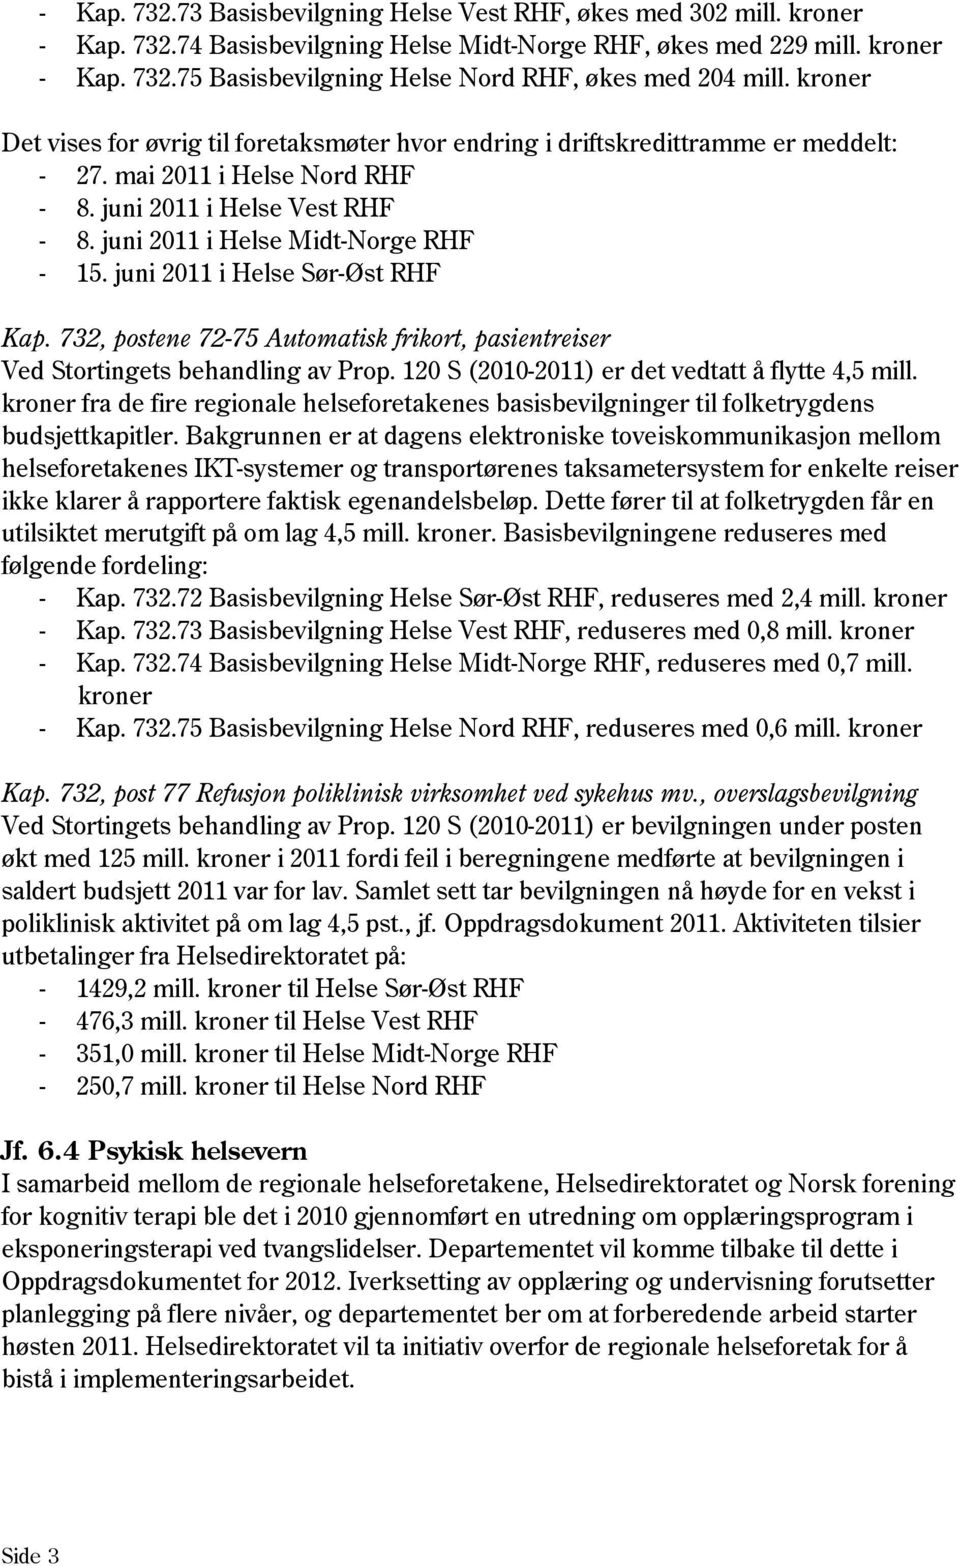 juni 2011 i Helse Sør-Øst RHF Kap. 732, postene 72-75 Automatisk frikort, pasientreiser Ved Stortingets behandling av Prop. 120 S (2010-2011) er det vedtatt å flytte 4,5 mill.